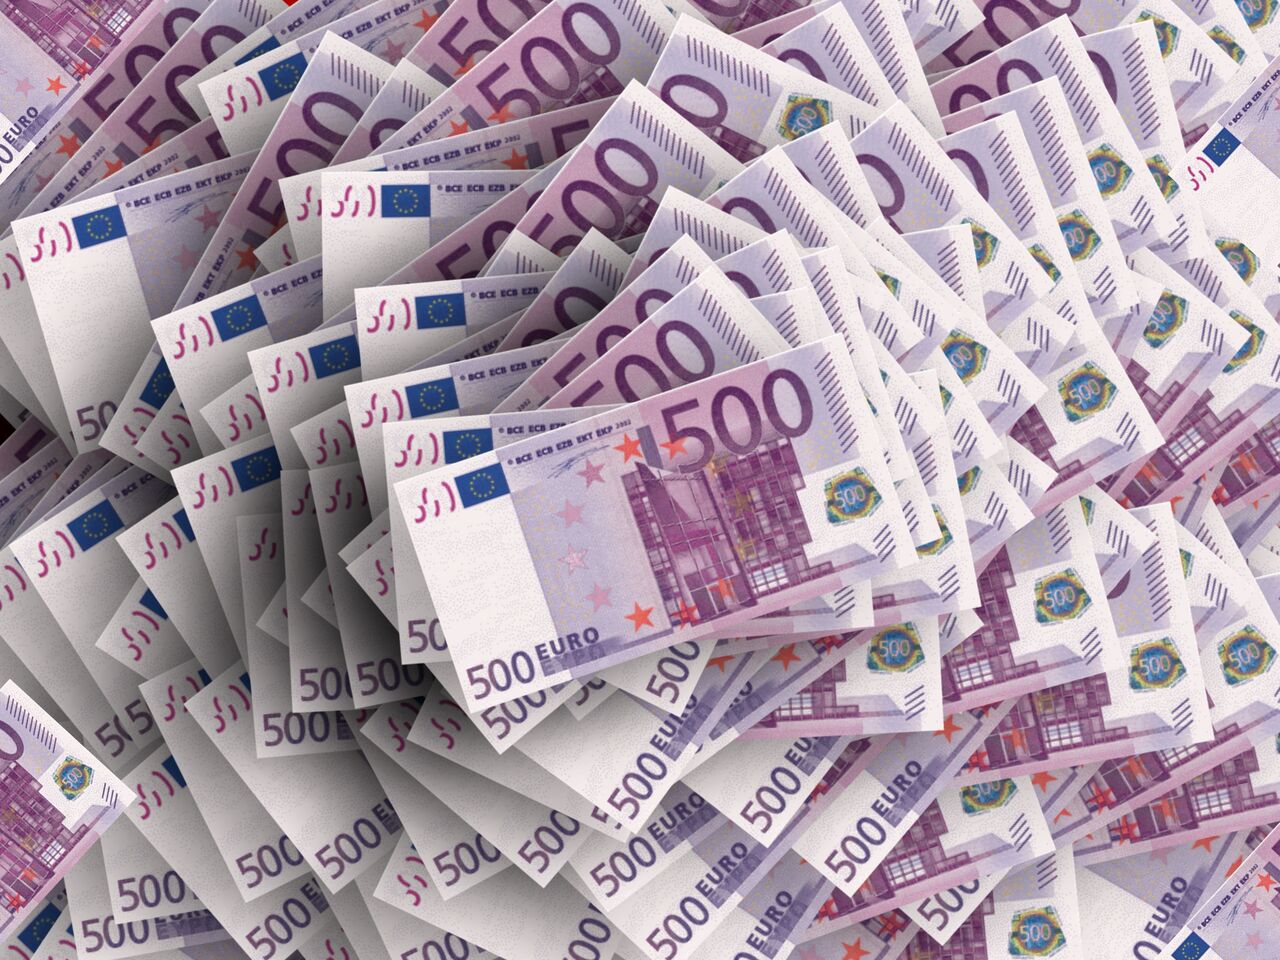 حمل و نگهداری بیش از ۱۰ هزار یورو مصداق قاچاق ارز است